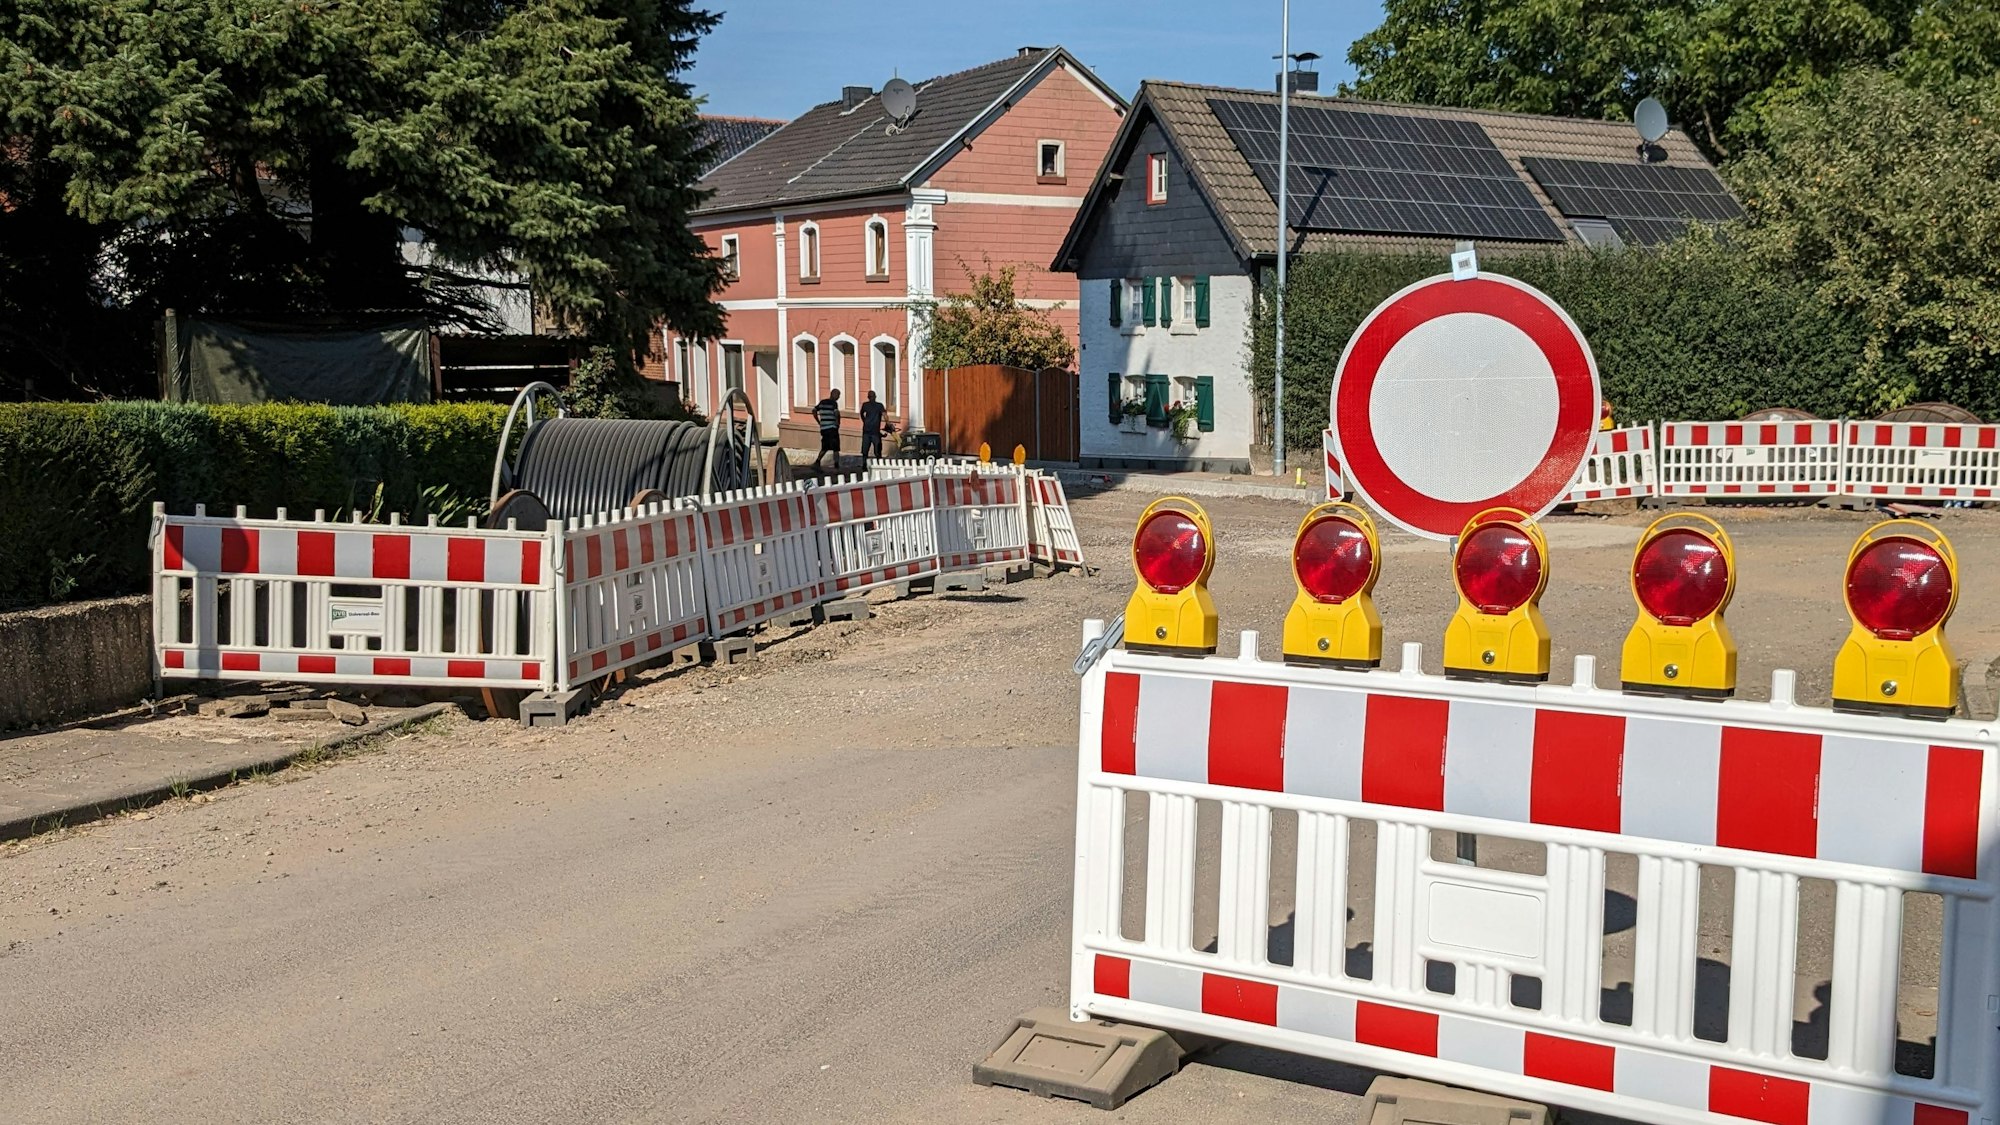 Baustelle zur Erneuerung der Ortsdurchfahrt Weyer: An einer Absperrung ist das Verkehrszeichen 250 („Verbot der Durchfahrt“) angebracht.